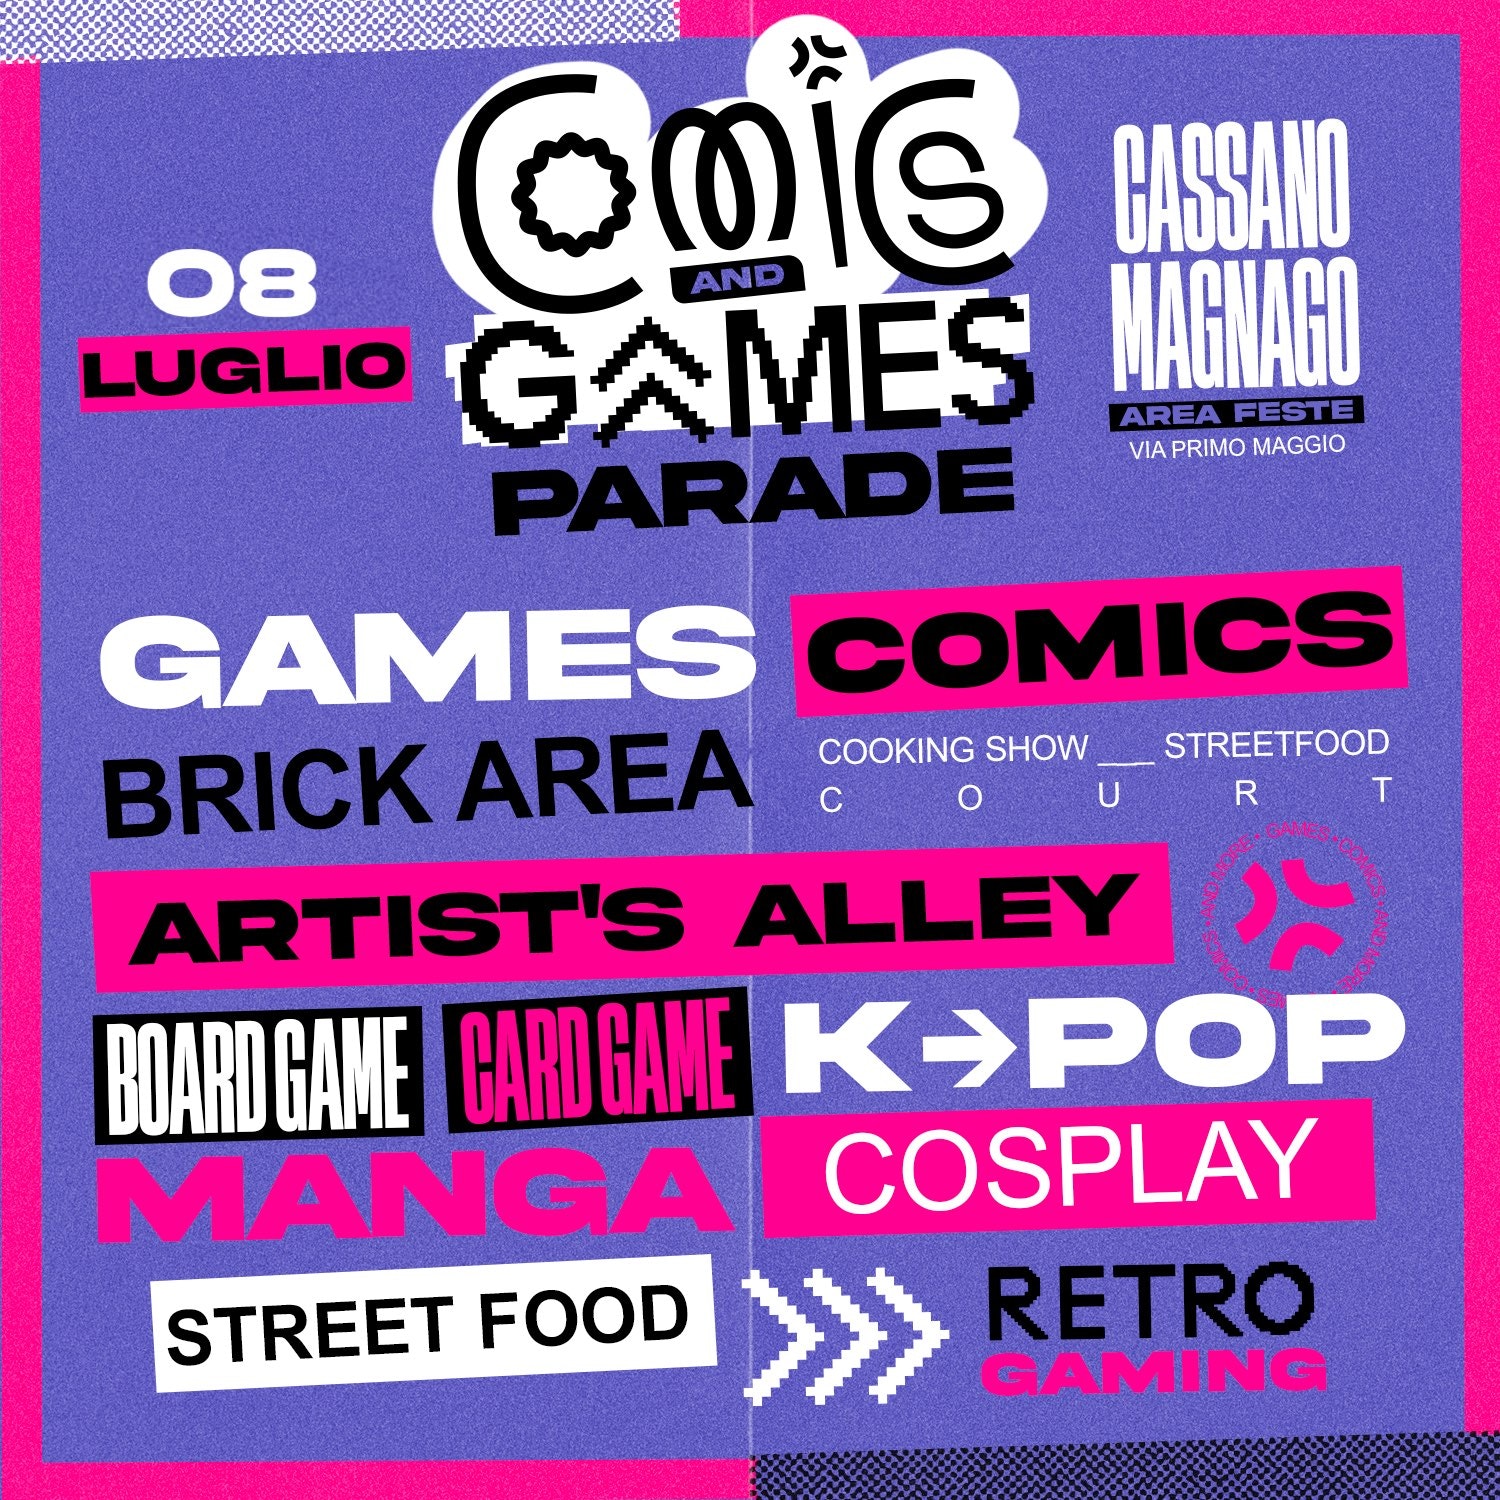 Comics & Games Parade